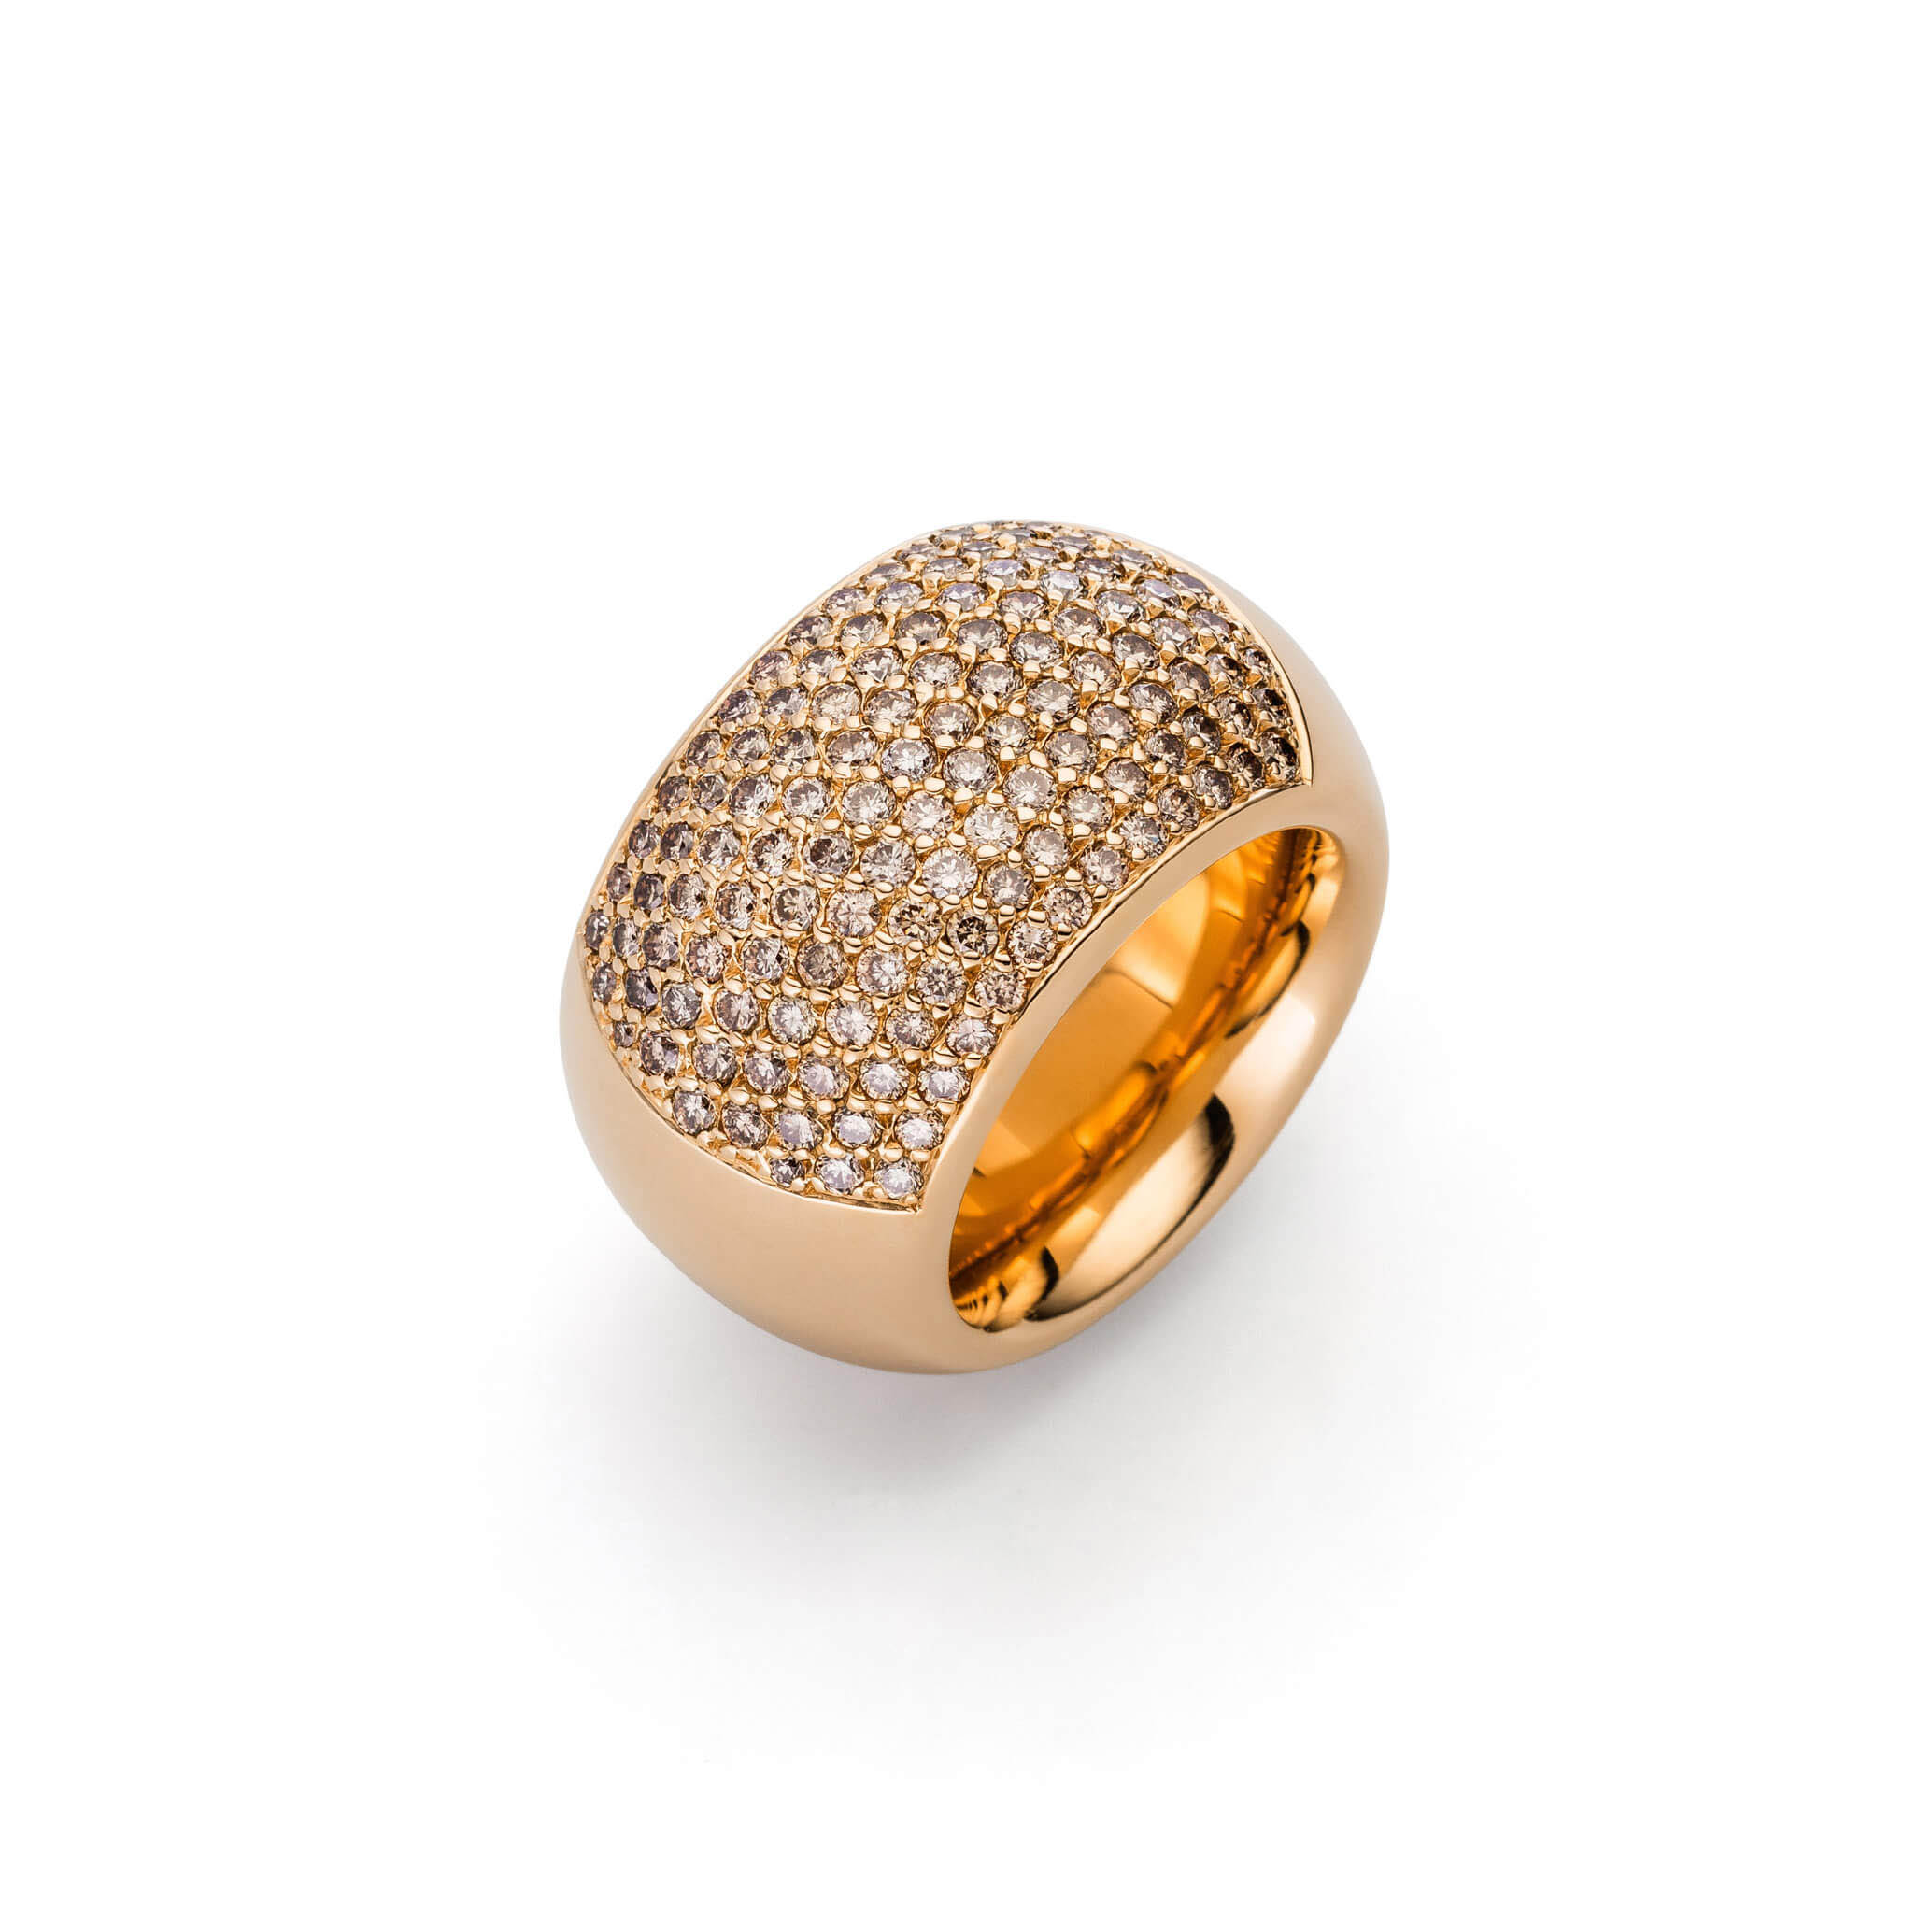 Venta al por mayor de anillos CZ personalizados, fabricantes de joyas, joyería OEM/ODM, China